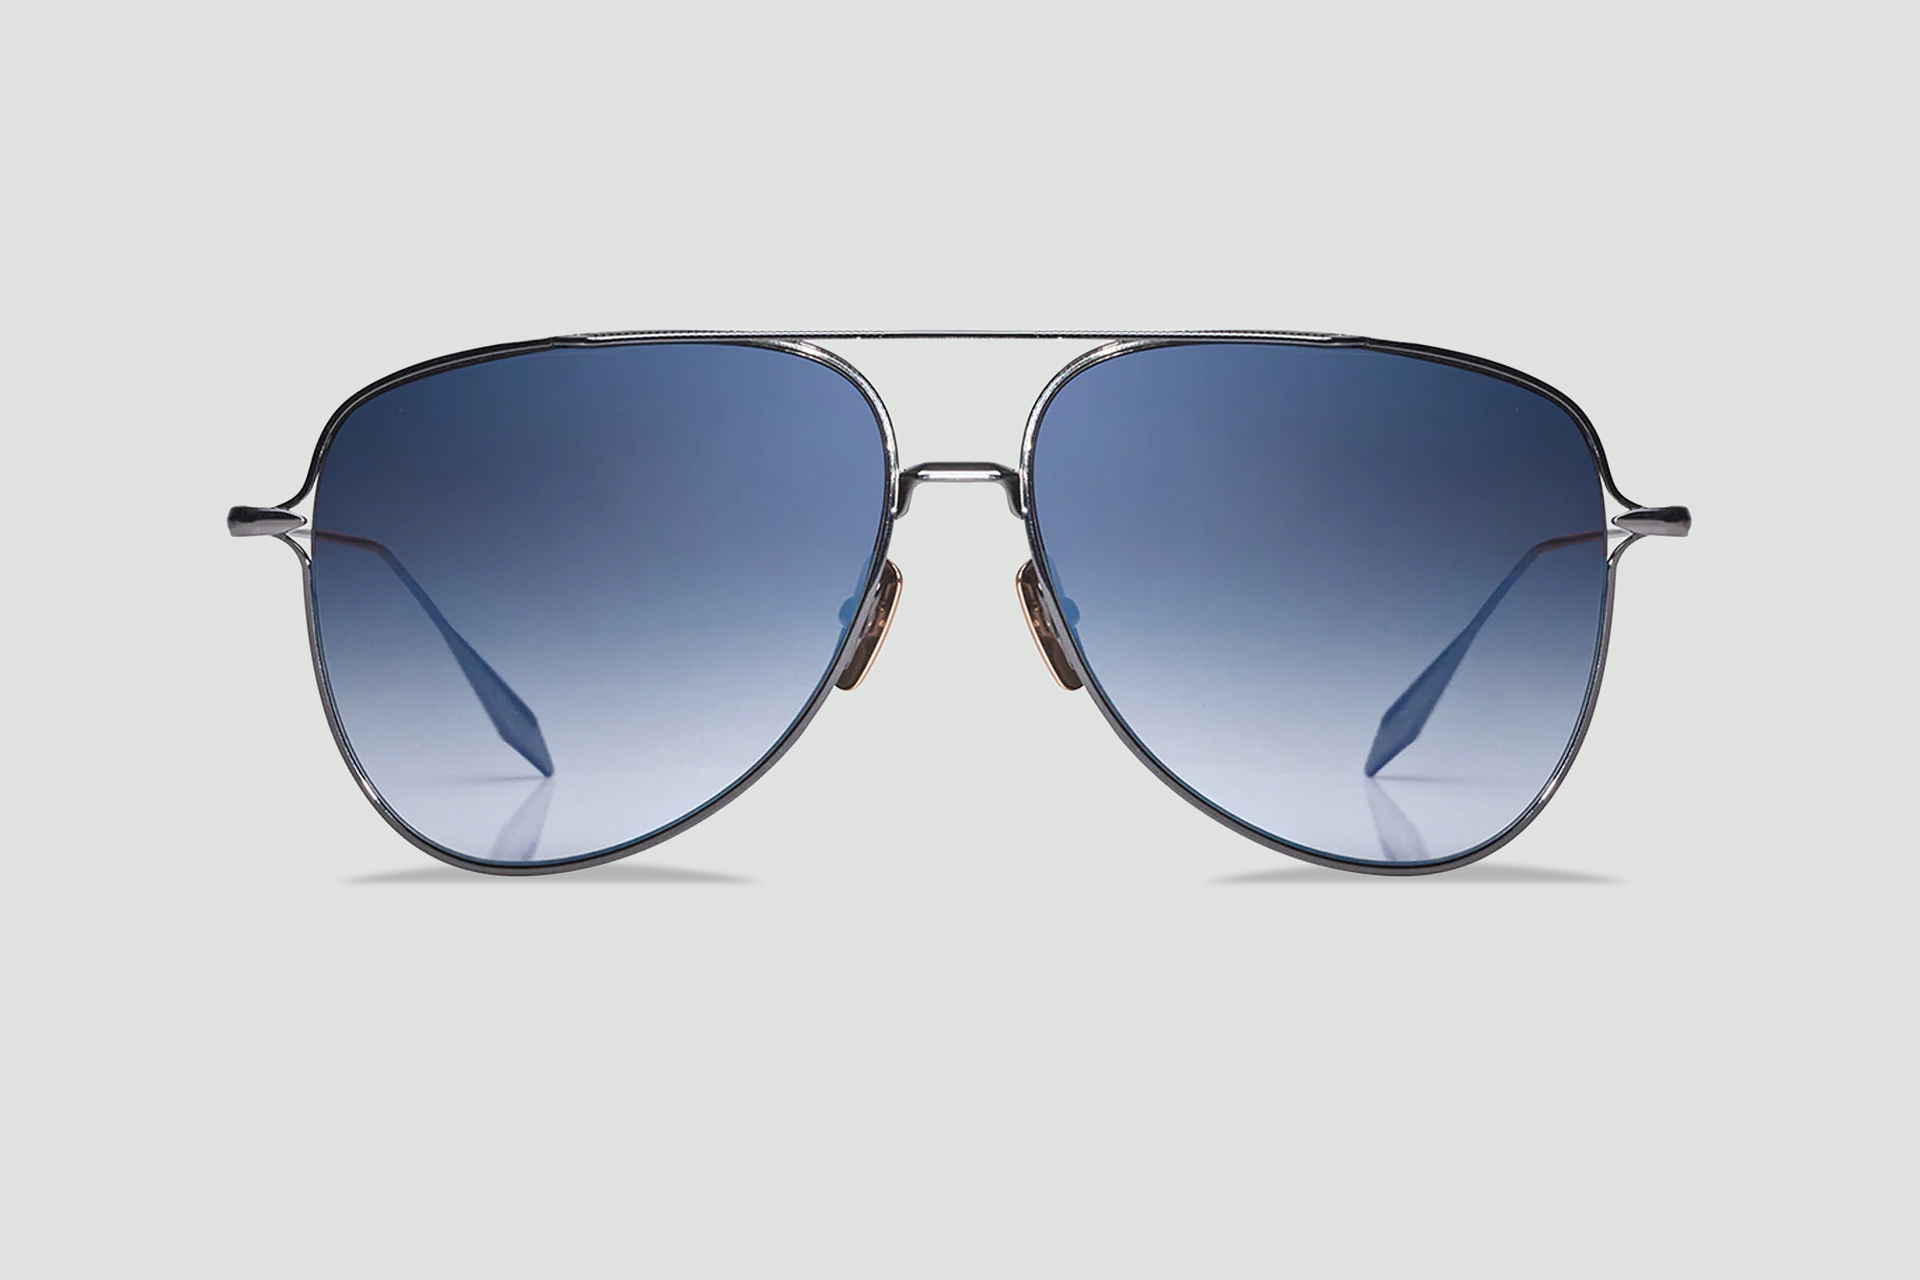 Dita Aviator Gradient Sunglasses - Black Sunglasses, Accessories - WDT23770  | The RealReal